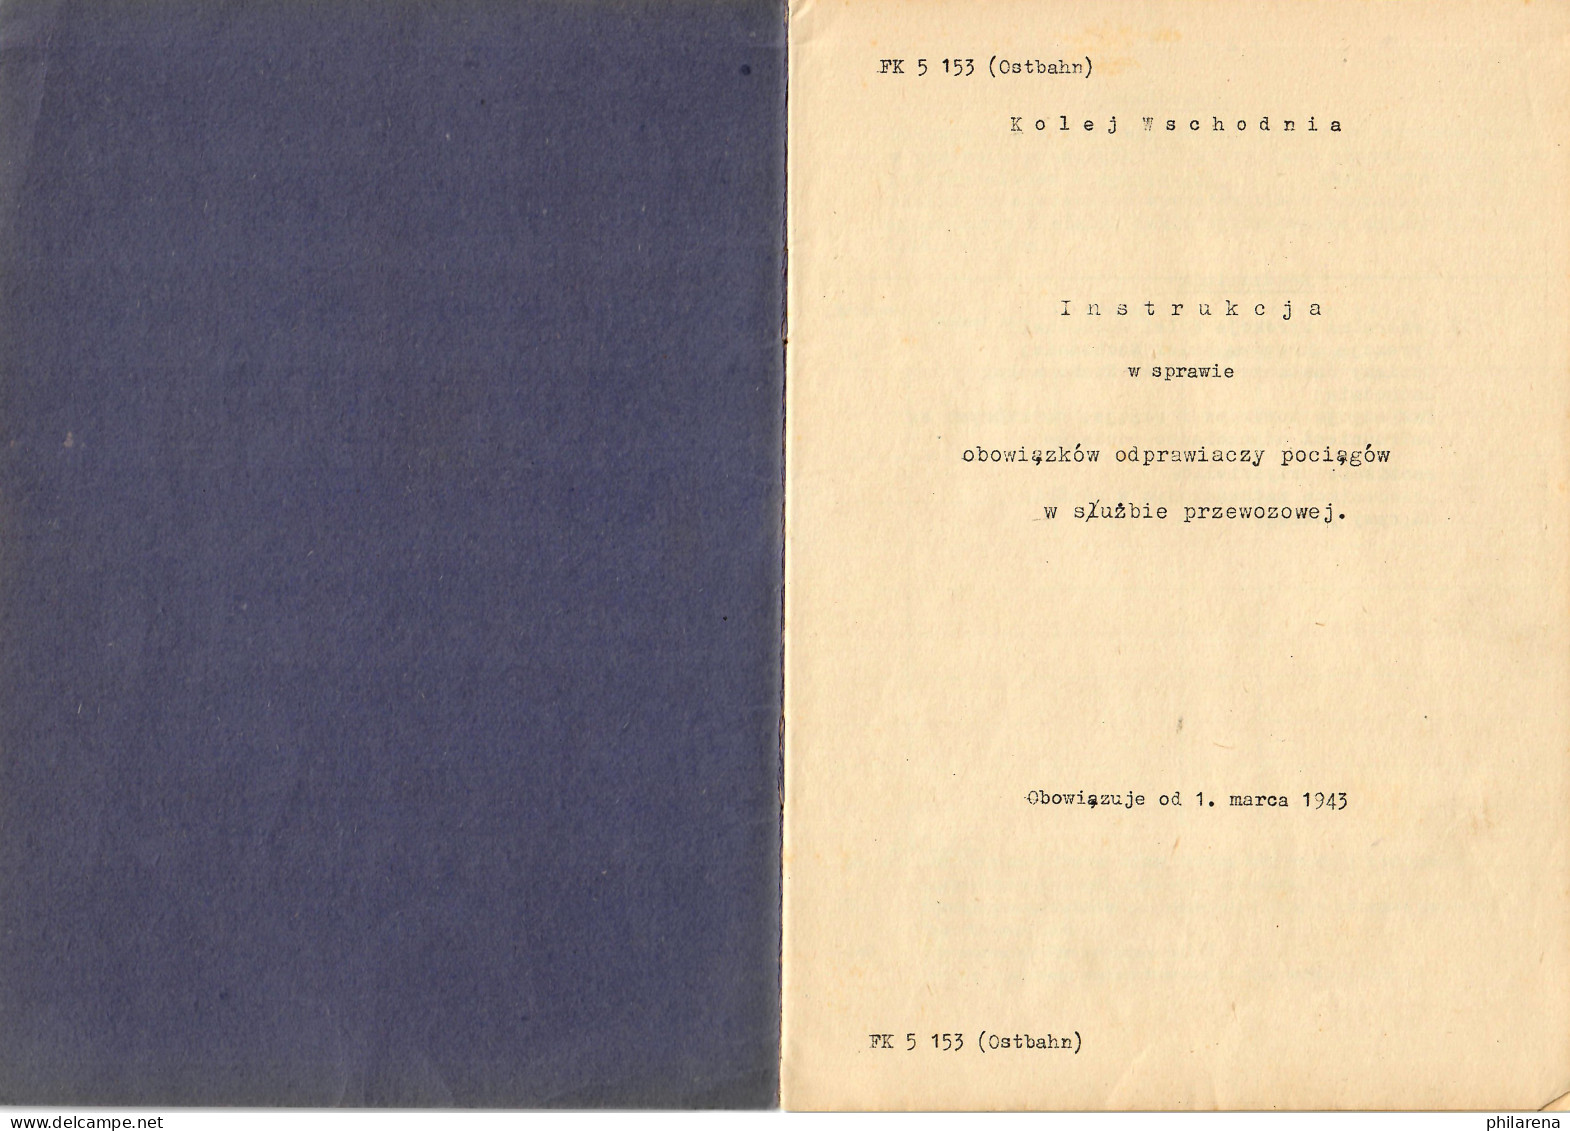 Instrukcja W Sprawie Obowiazkow Odprawiaczy Pociagow W Sluzbie Przewozowej 1943 - Oude Boeken